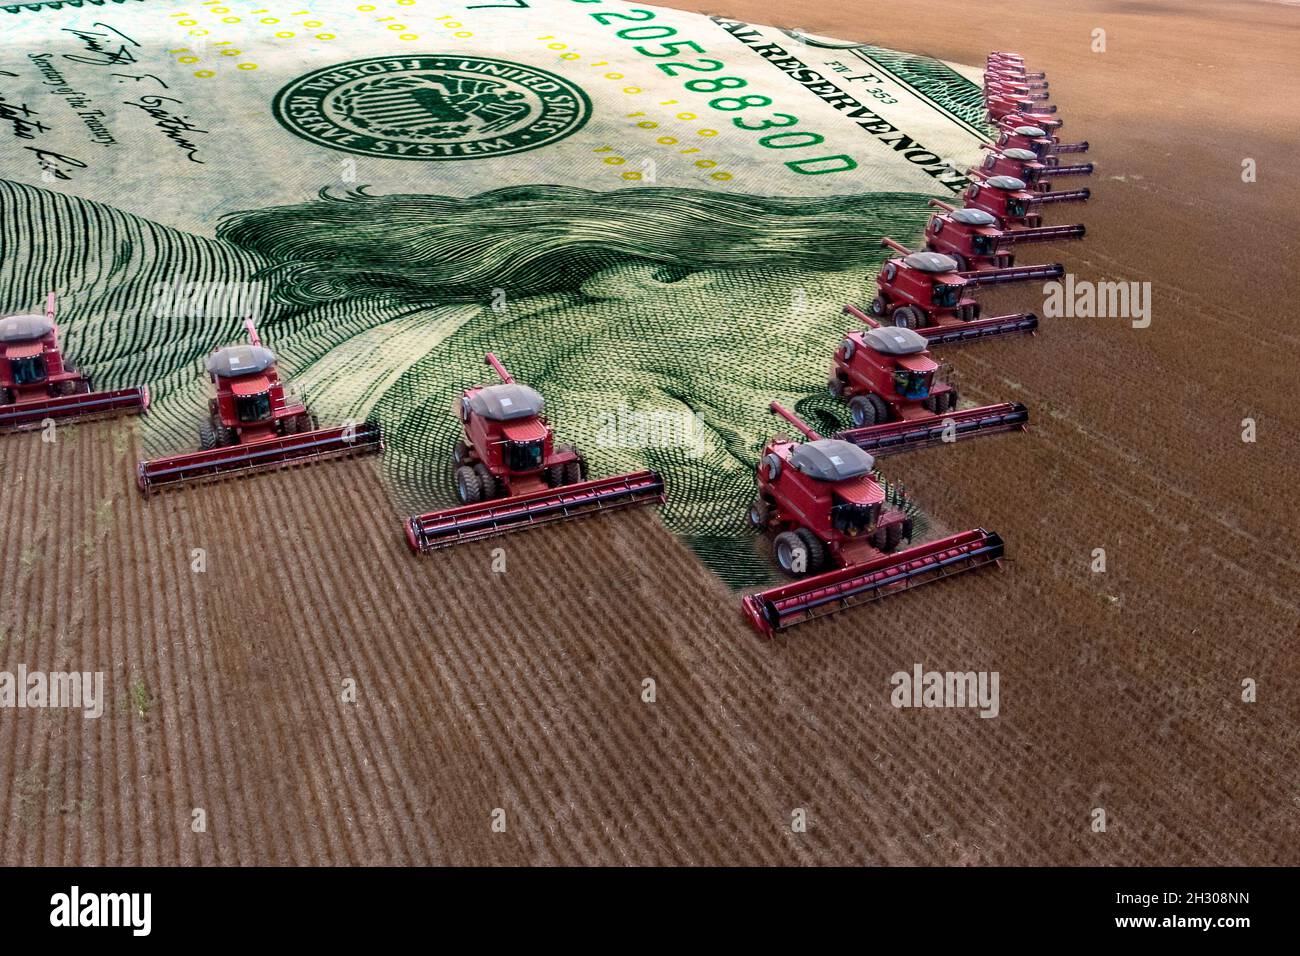 Cosecha masiva de soja en una granja del estado de Mato Grosso, Brasil. Concepto de materias primas con agroindustria y billete de dólar. Foto de stock